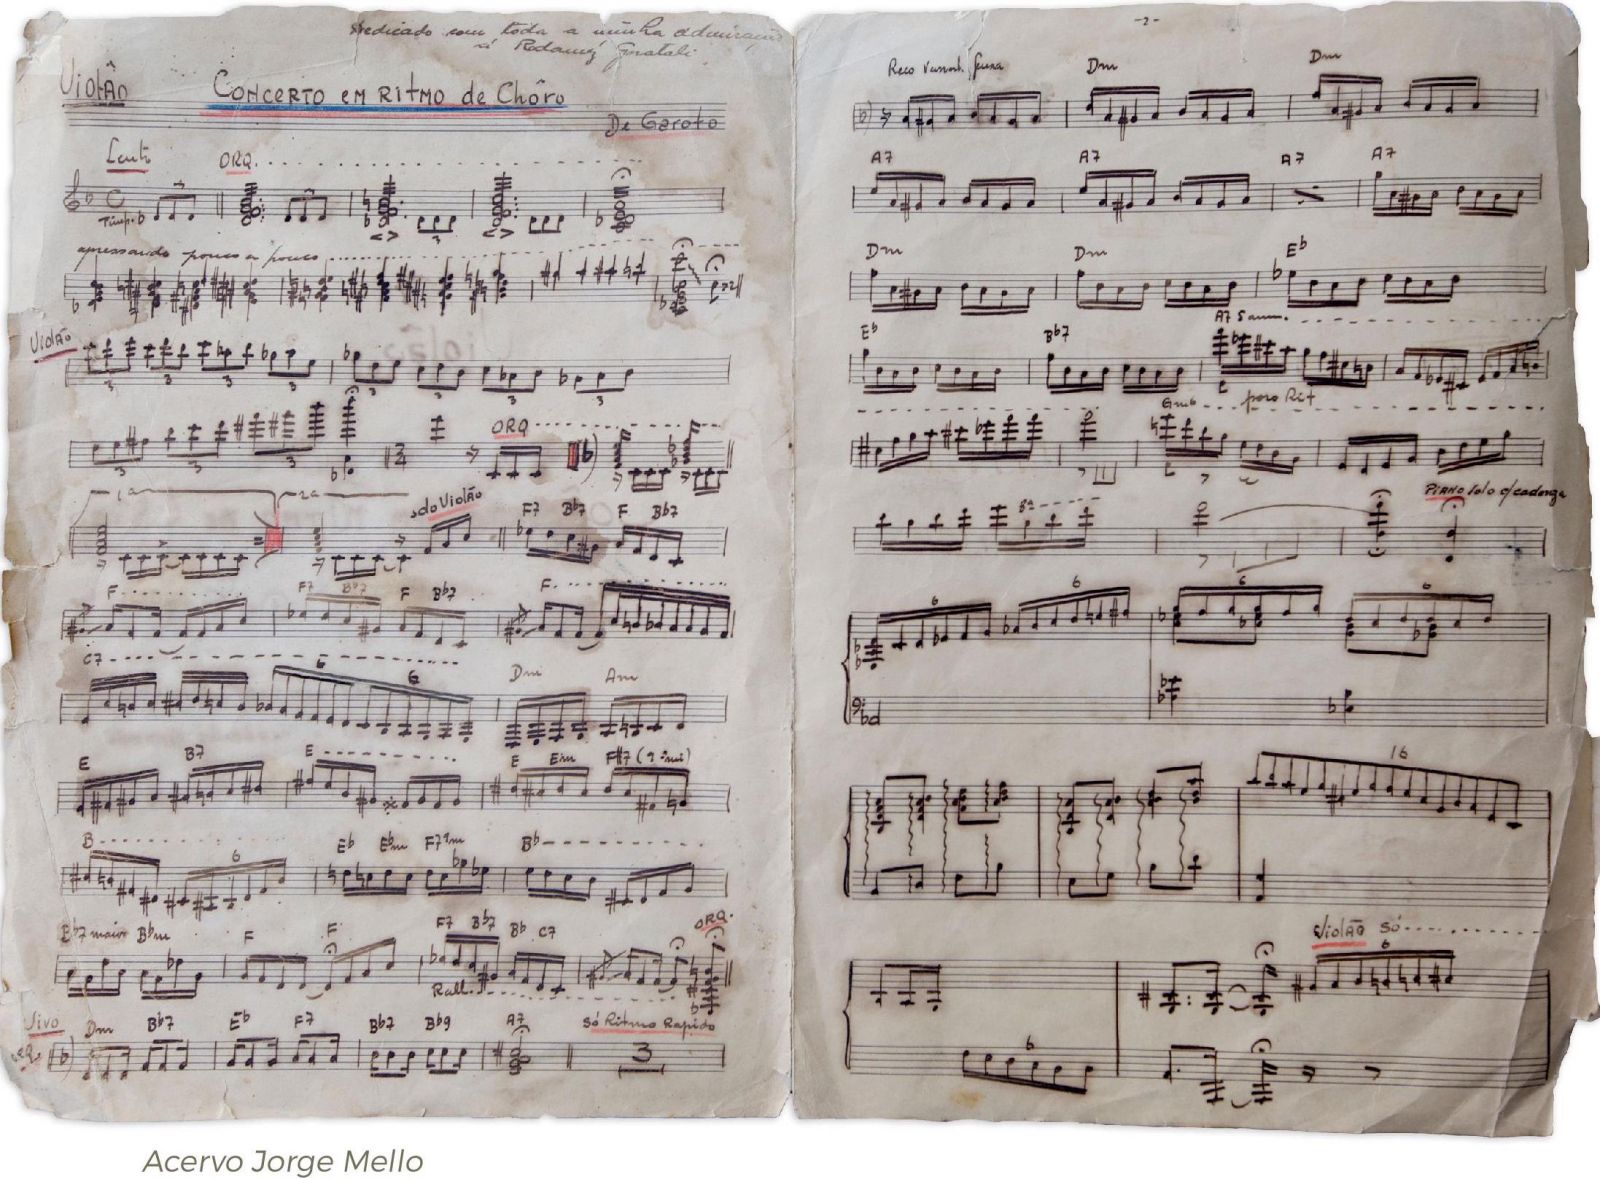 Livro de partituras inéditas de Garoto é publicado no Acervo Digital do Violão Brasileiro - manuscritos Garoto